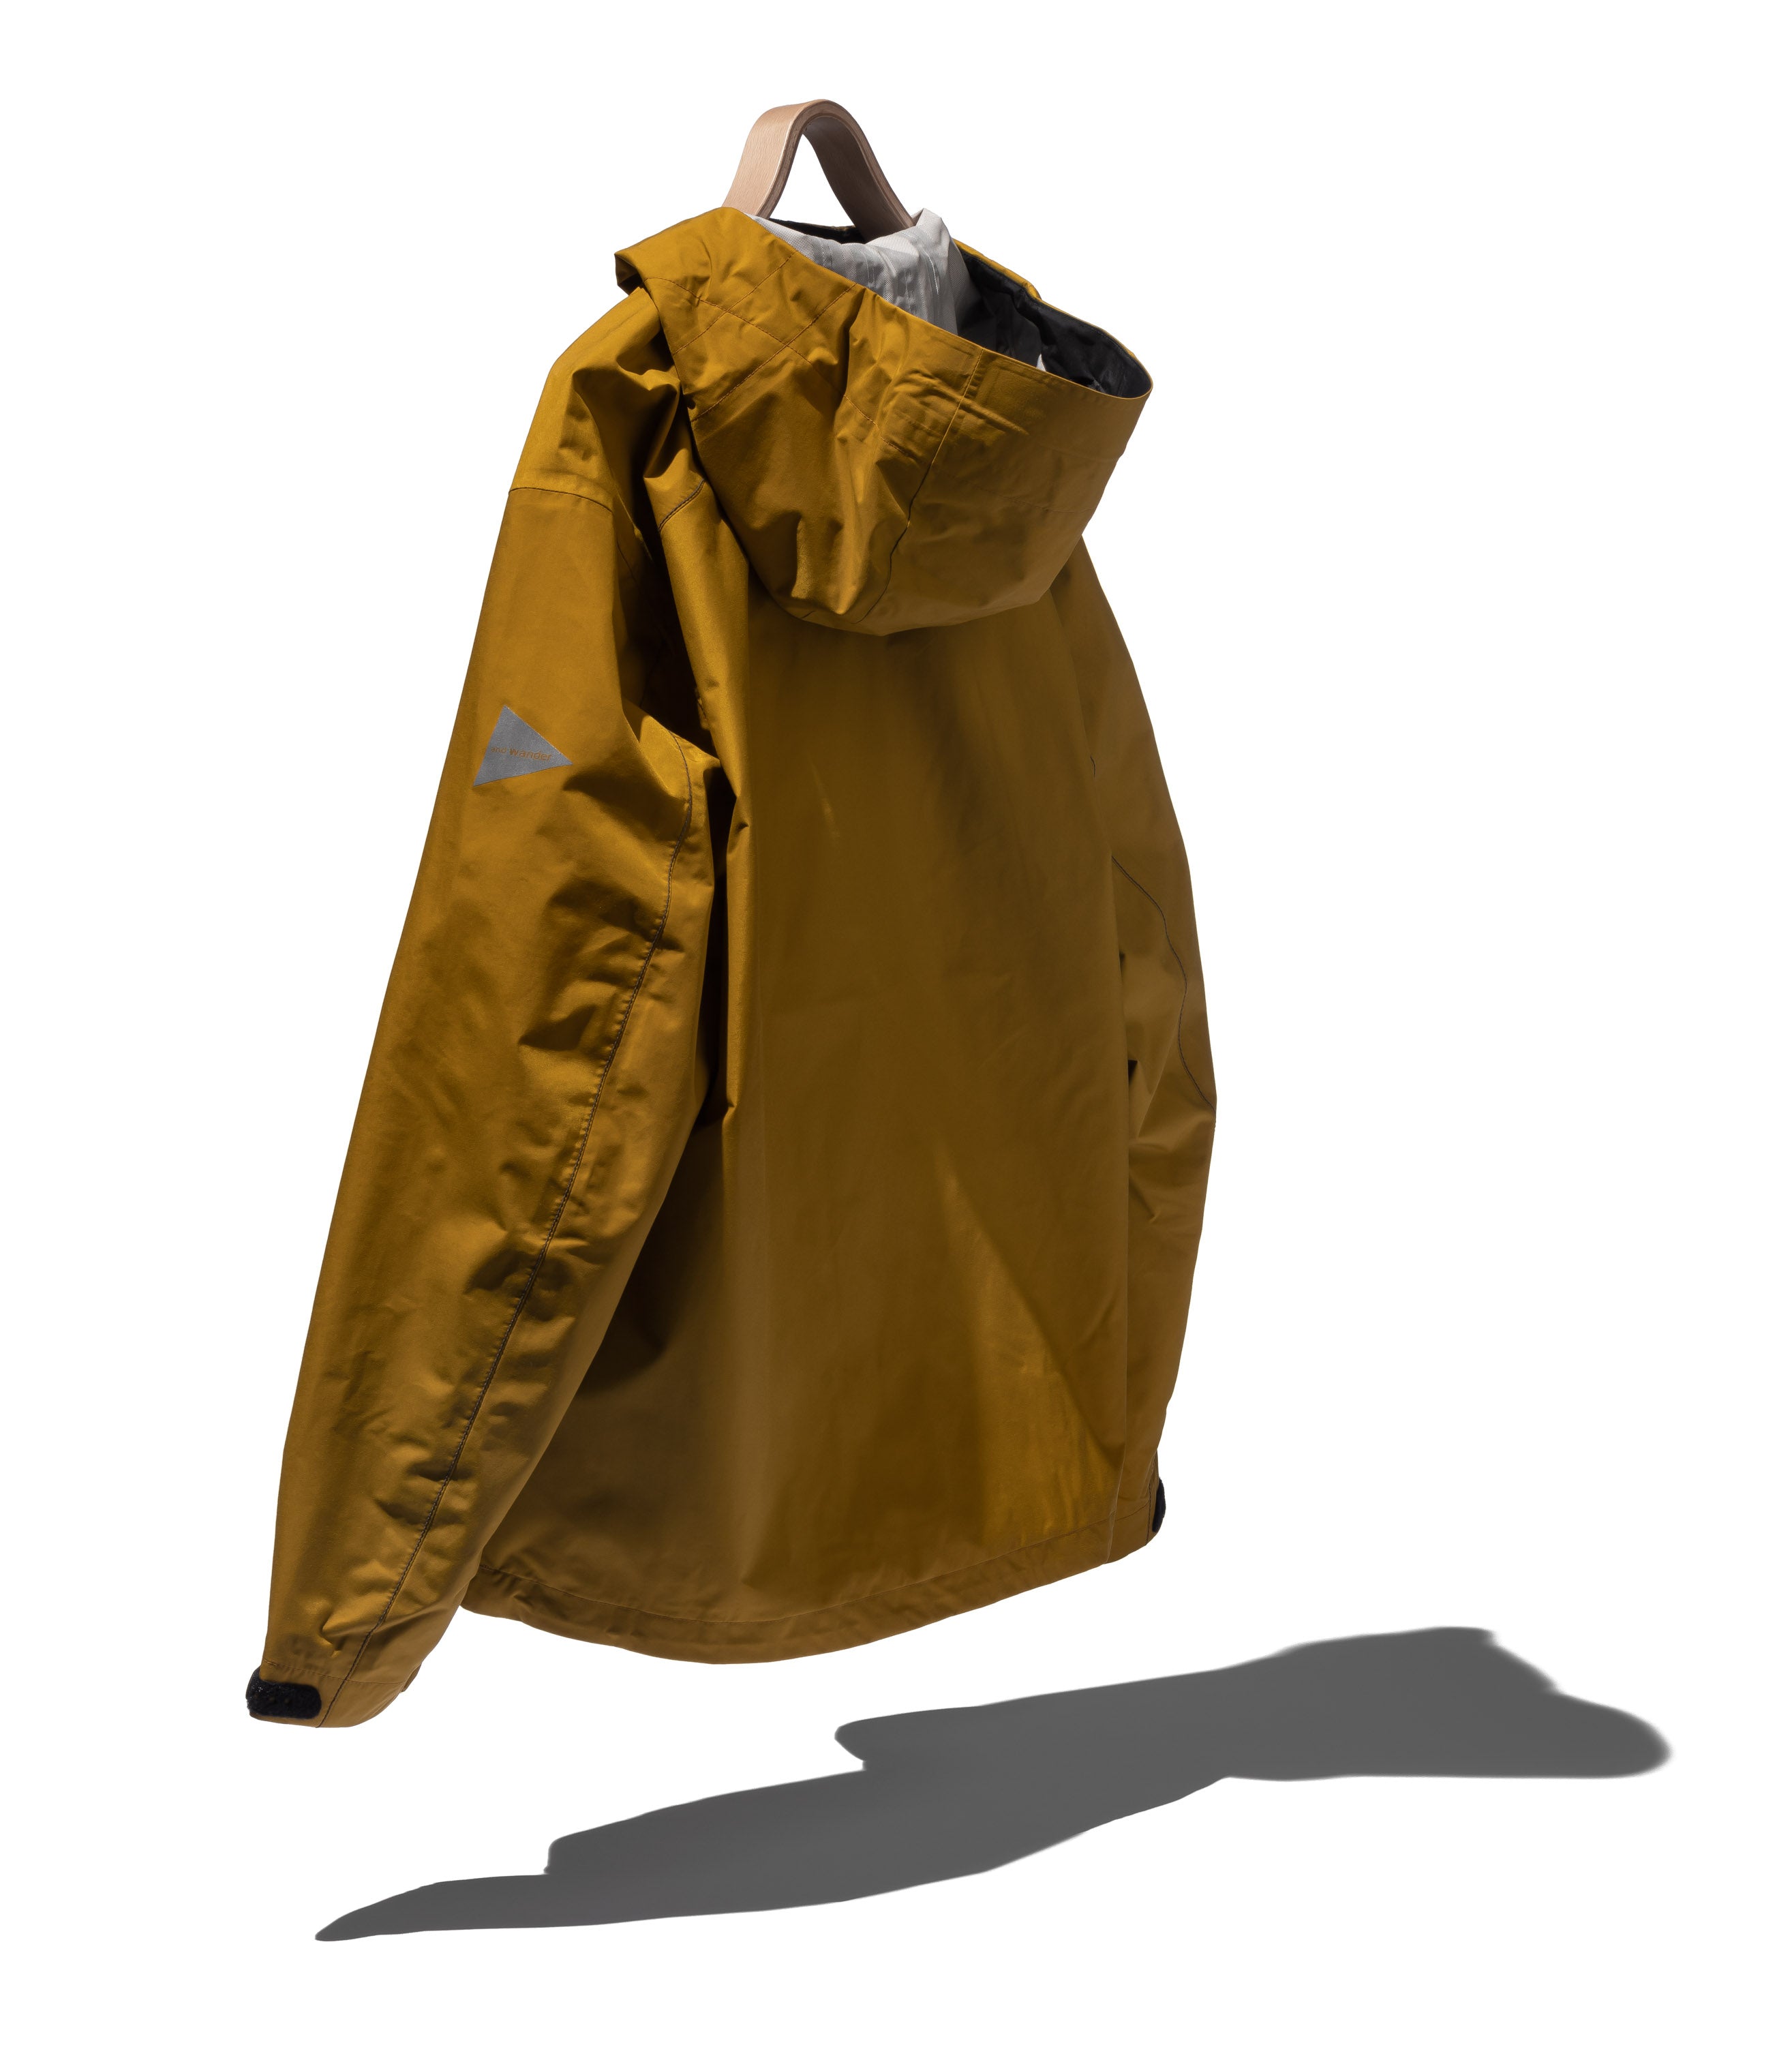 2.5L hiker rain jacket